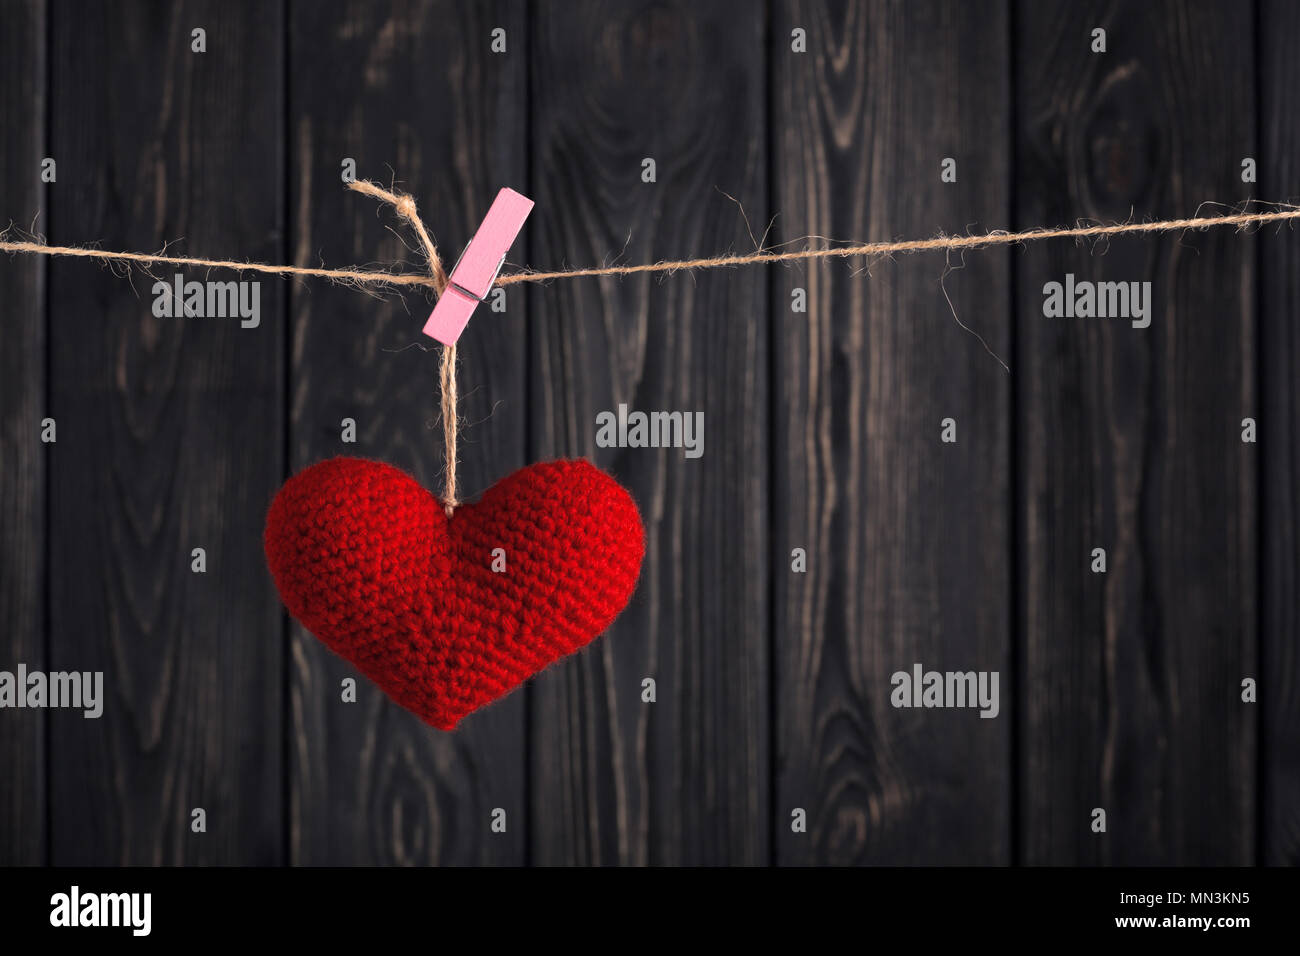 Coeur rouge fait main accroché sur corde avec clothespin gris foncé sur fond de bois. Happy Valentine's Day celebration. Concept Love message Banque D'Images